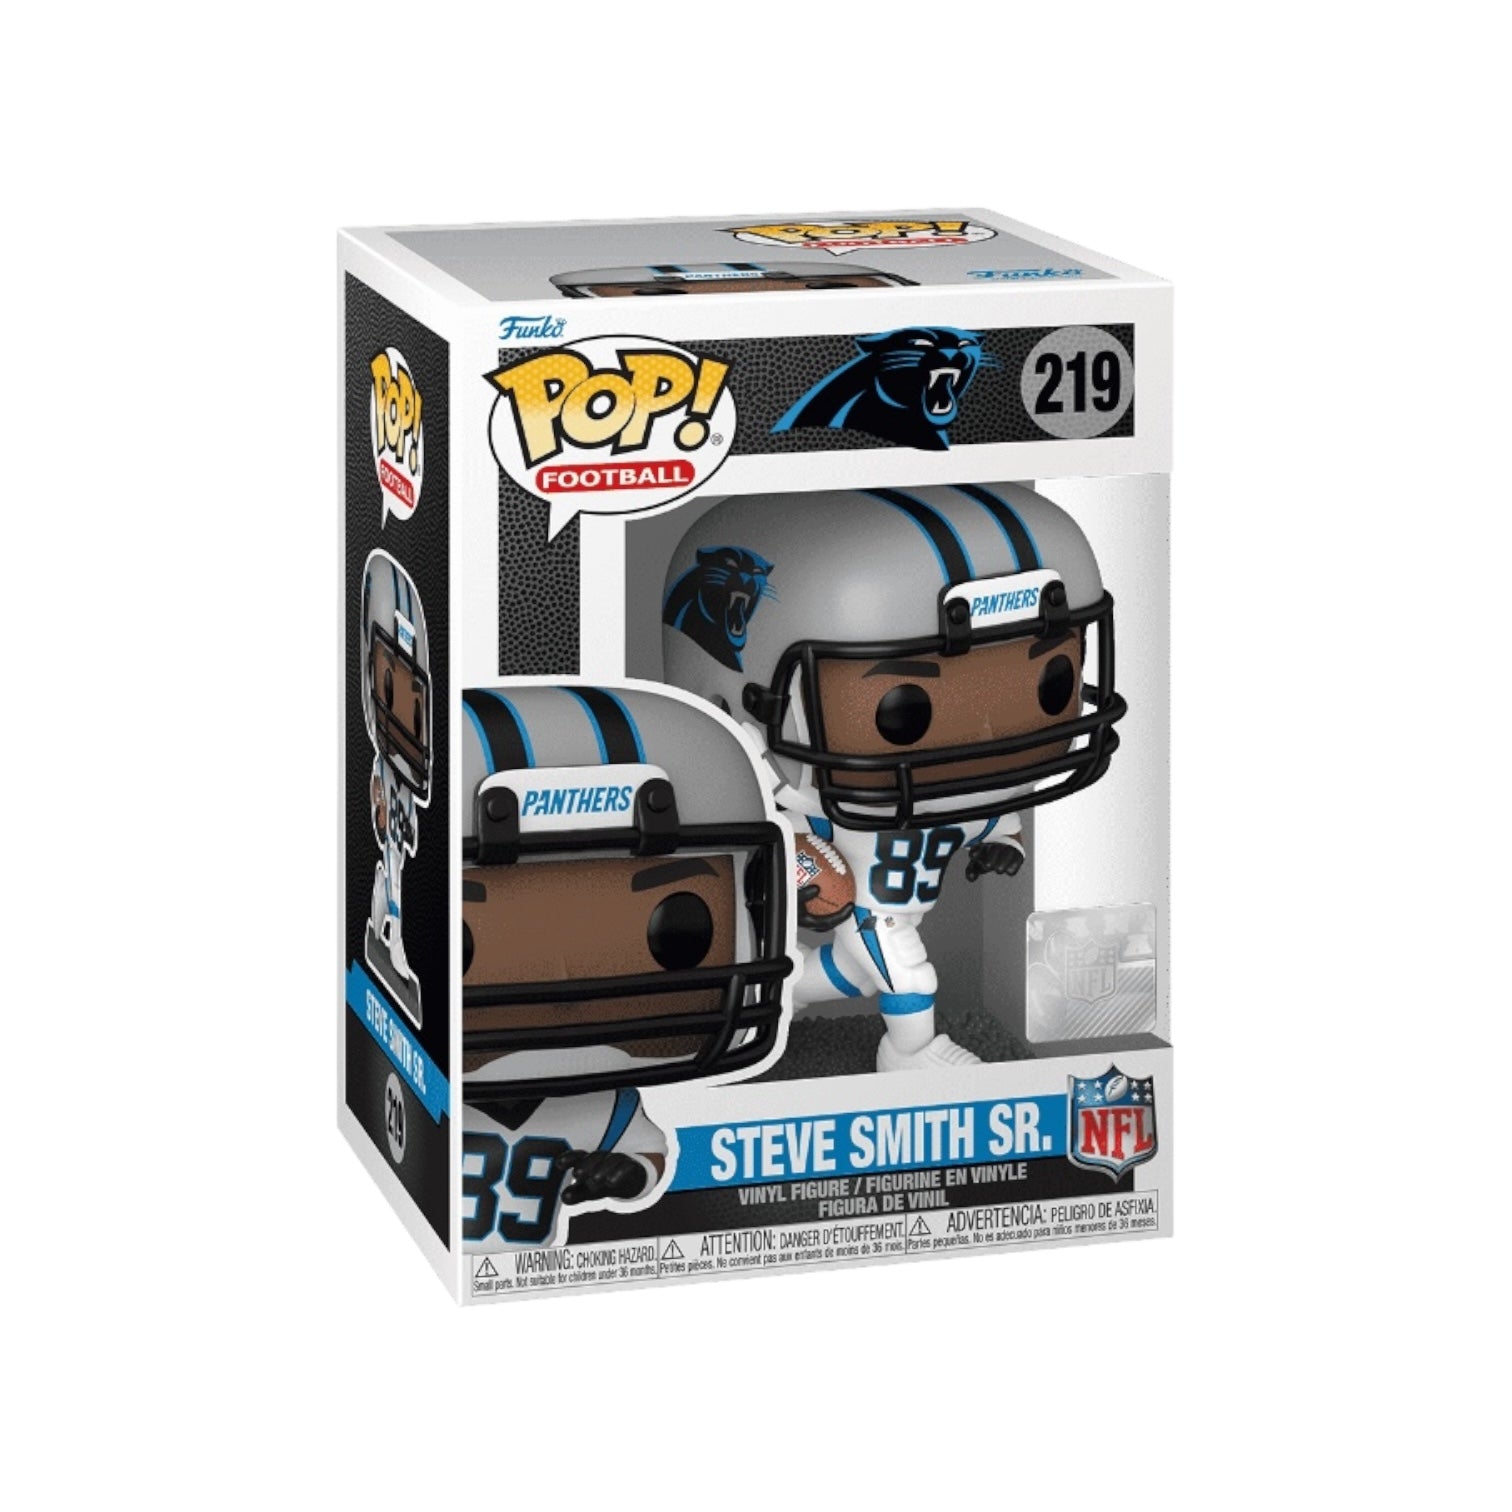 Steve Smith Sn #219 Funko Pop! - Carolina Panthers - NFL